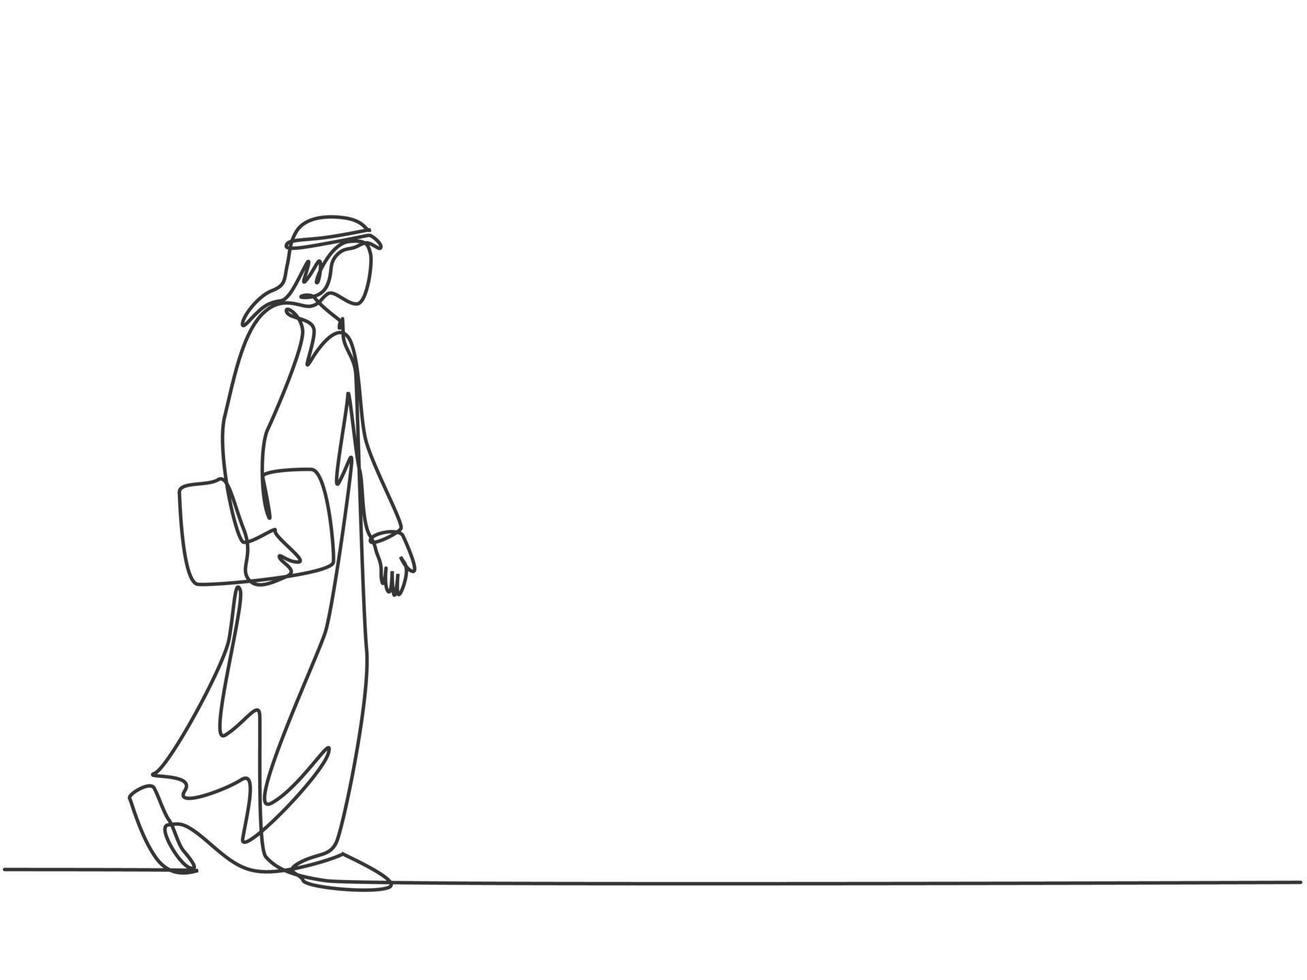 un unico disegno di giovani lavoratori musulmani maschi felici che camminano di fretta per prendere l'autobus. shmag di stoffa dell'arabia saudita, kandora, foulard, ghutra. illustrazione vettoriale di disegno di disegno di linea continua